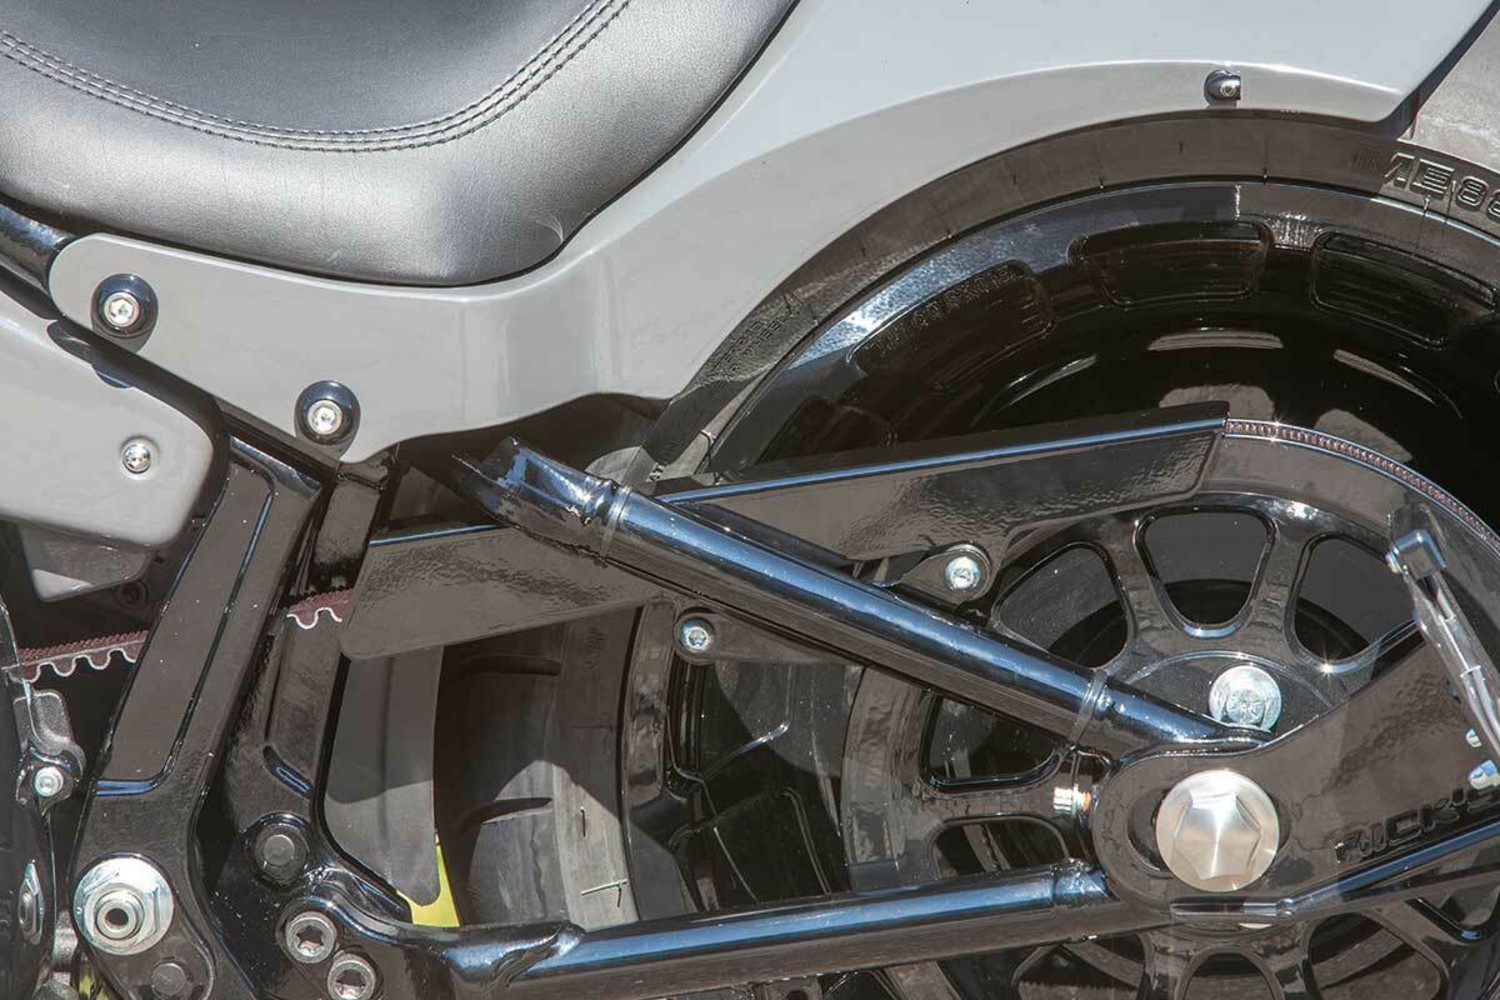 Ricks Harley-Davidson FXDR Beltabdeckung Riemenschutz schwarz matt 